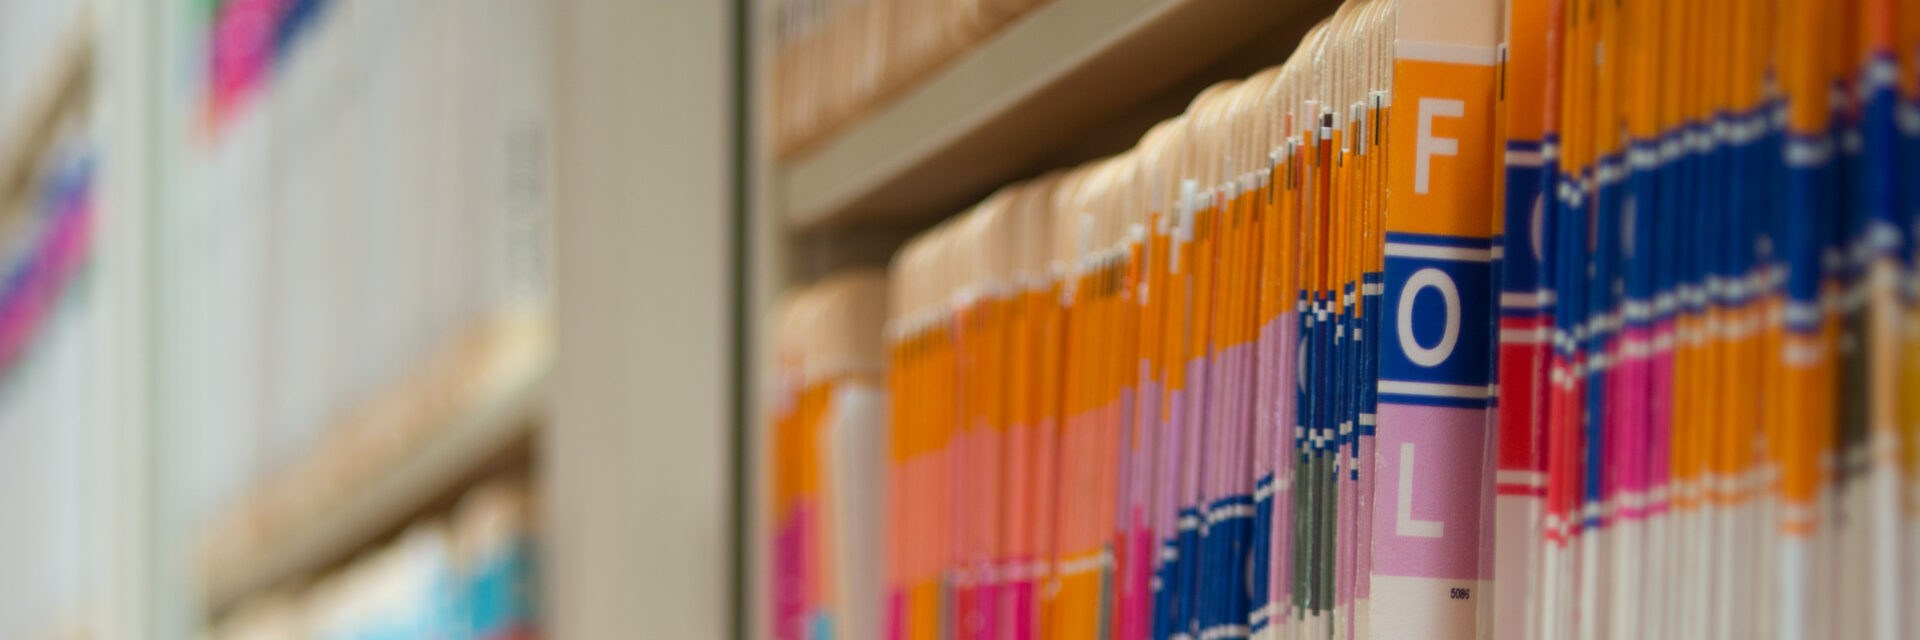 A row of colorful file folders on a shelf.